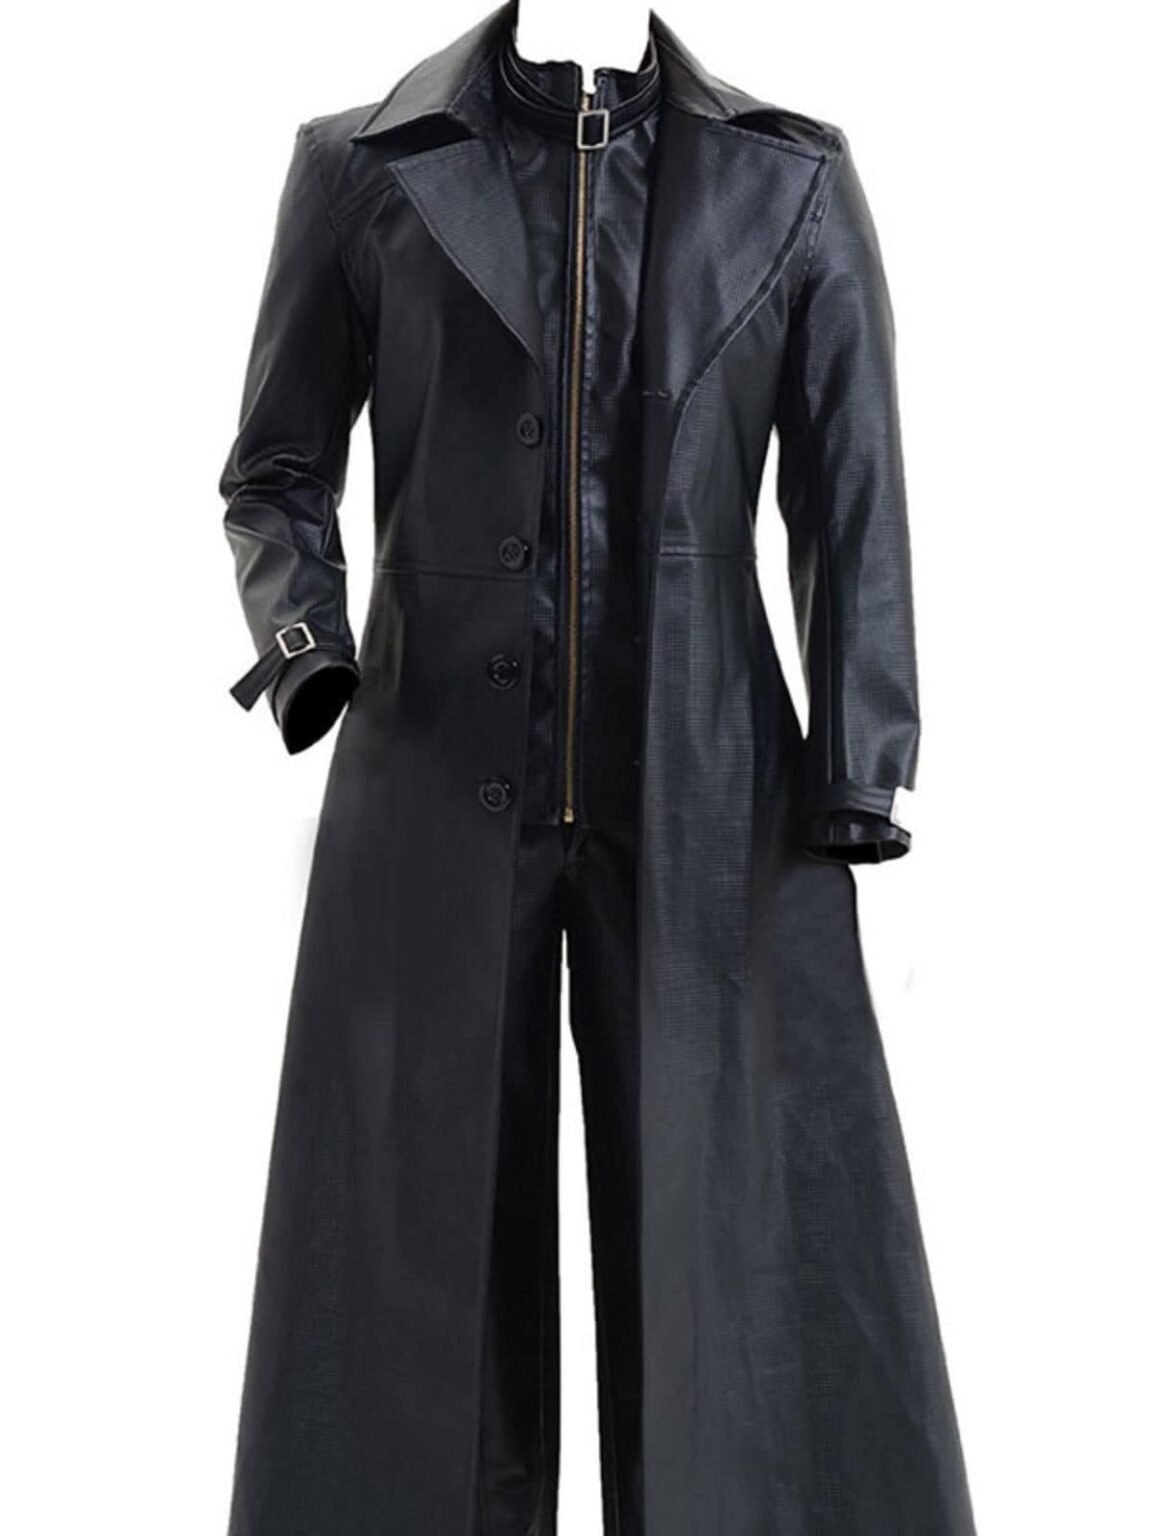 Resident Evil 5 Albert Wesker Black Leather Coat | Best